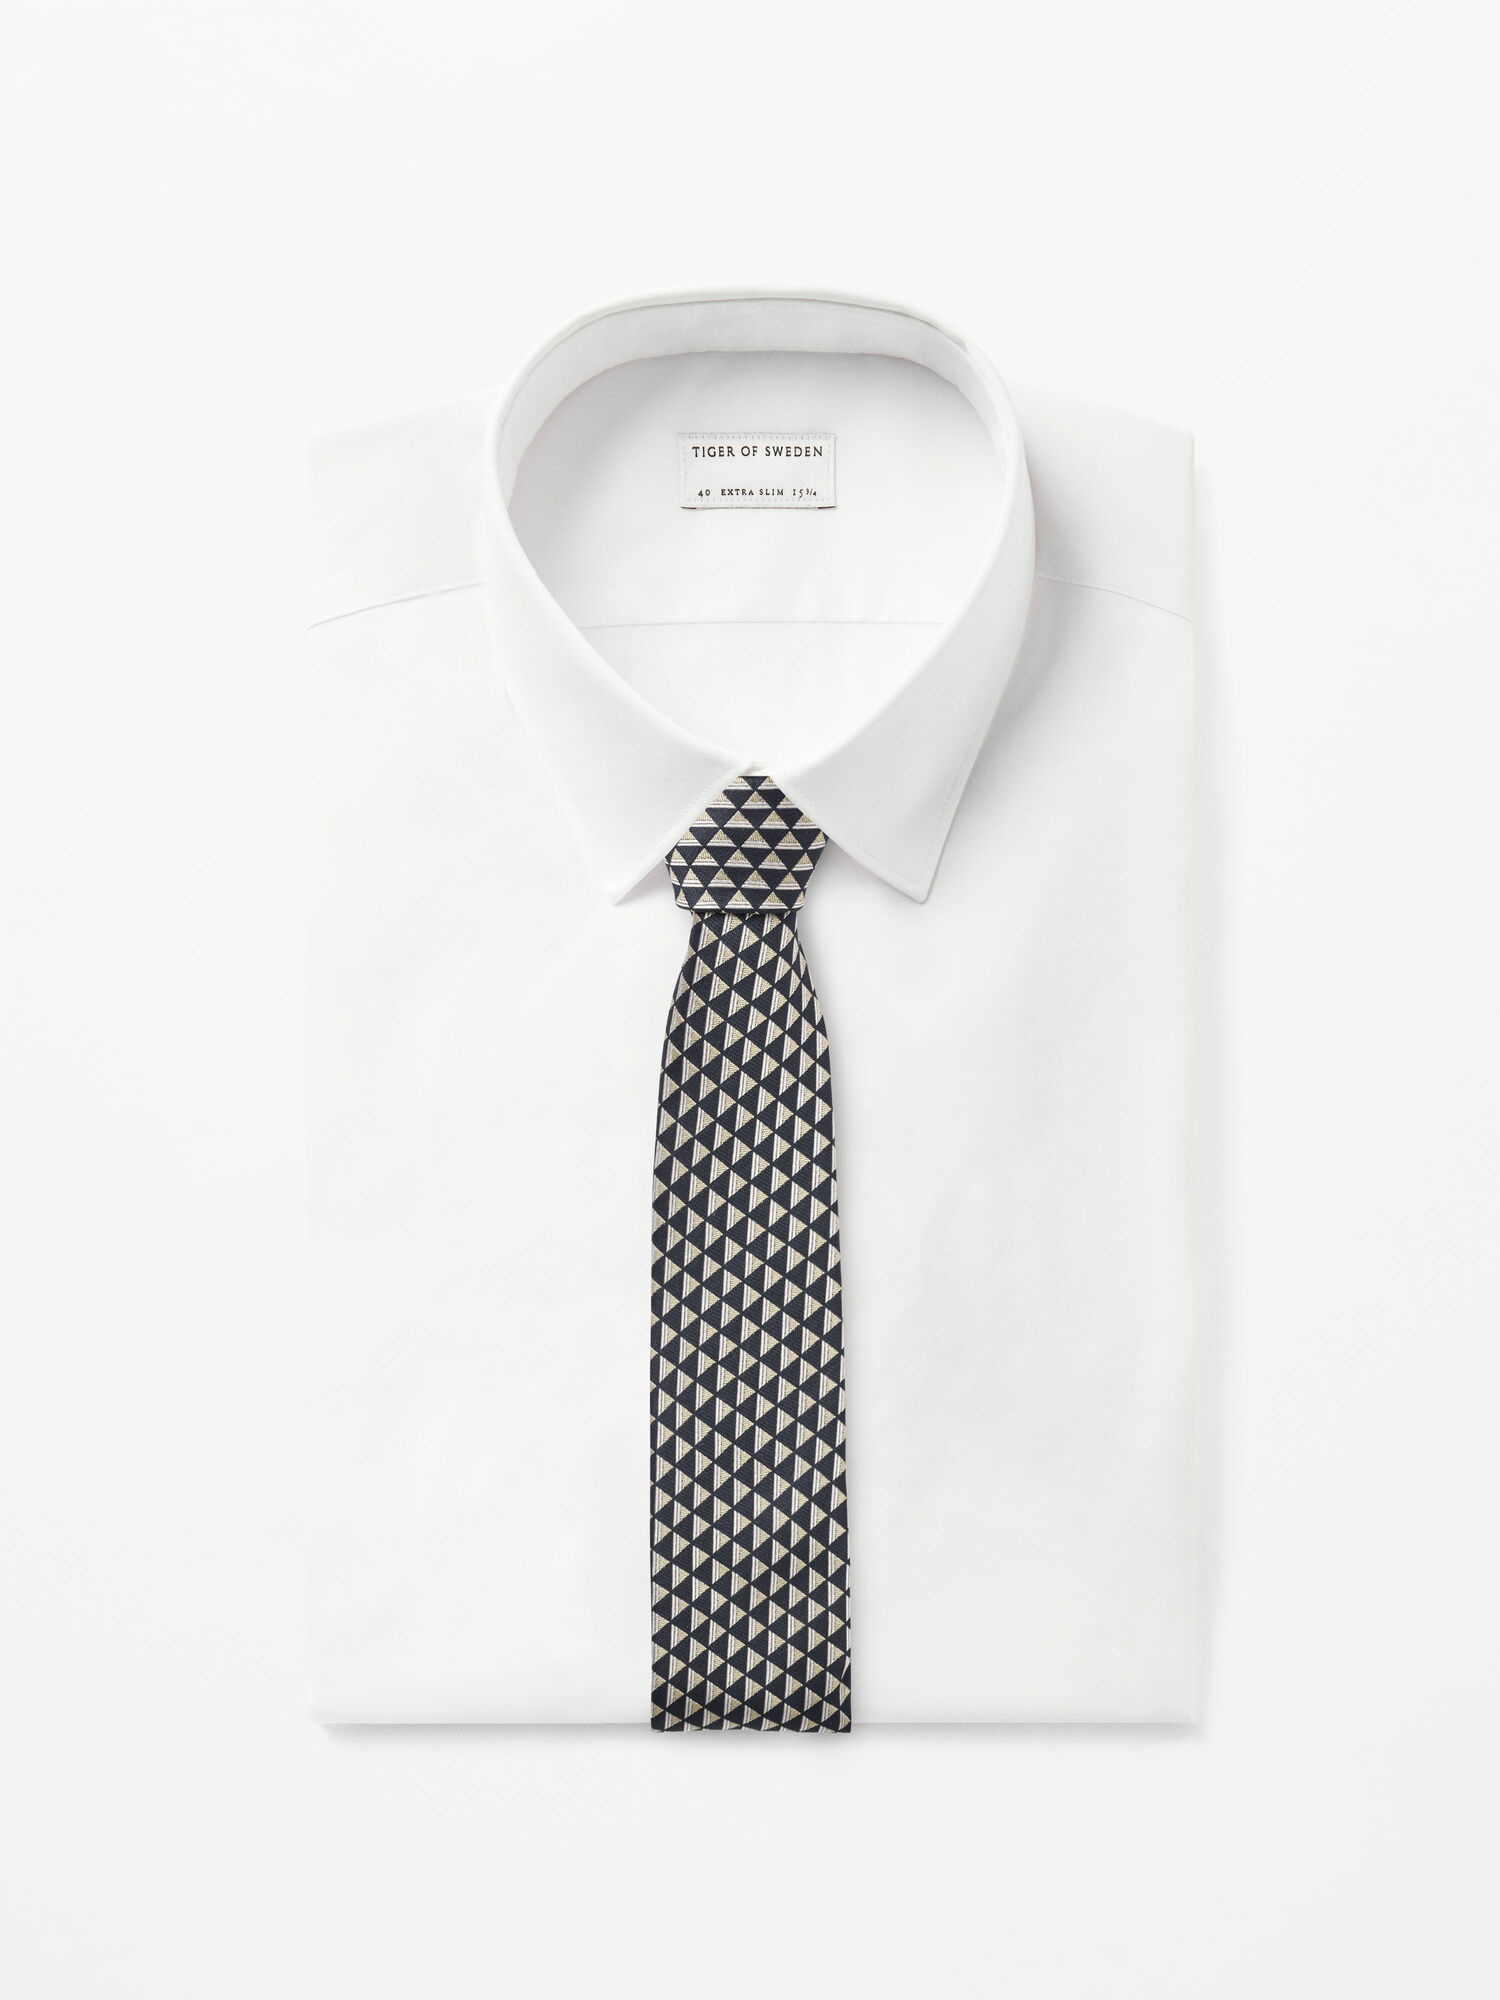 Triart Necktie